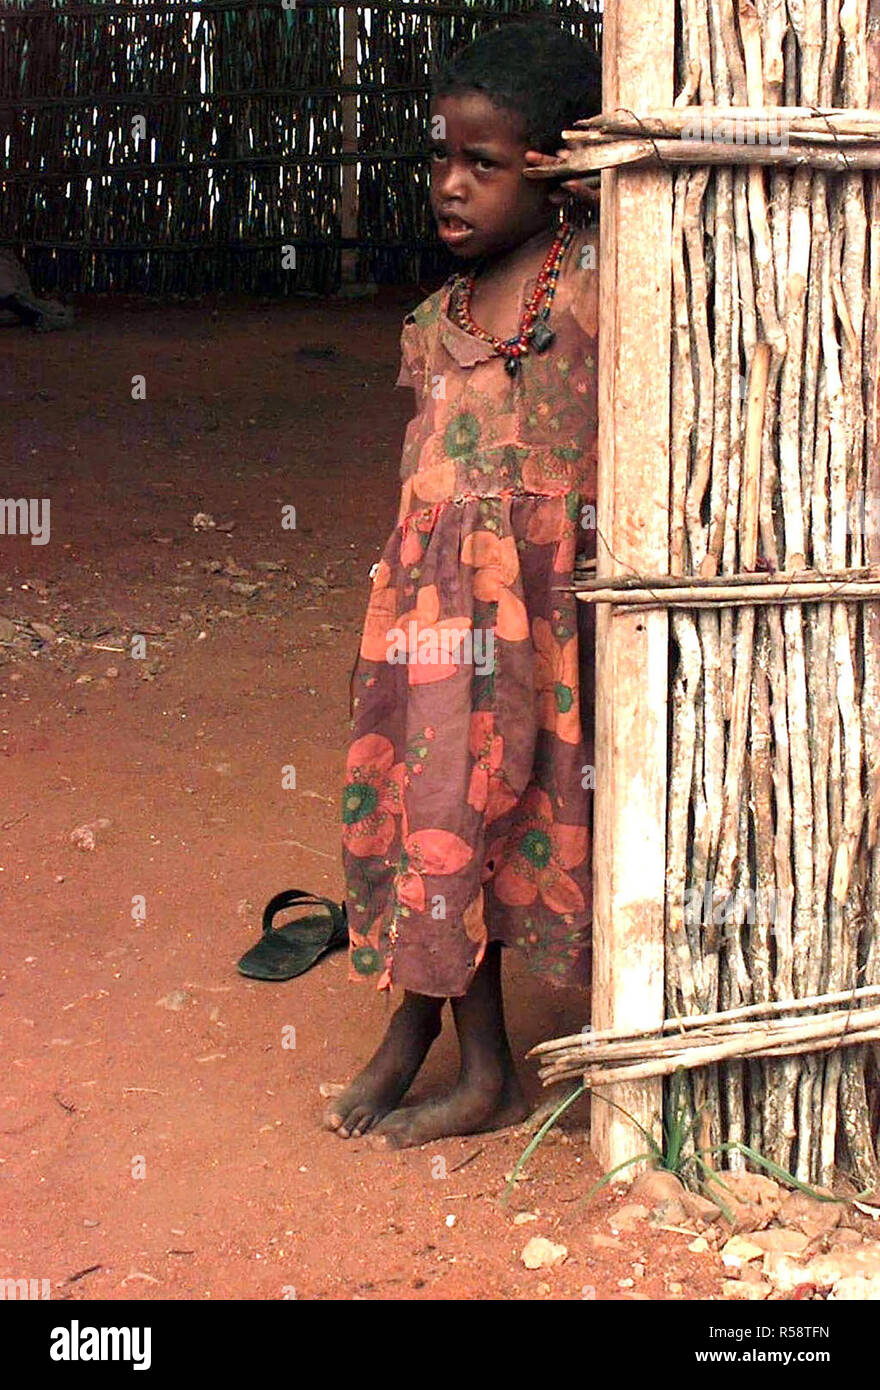 1992 - dritto, medium close-up di una ragazza somala, circa sei o sette anni. Indossa un abito fiorito e si appoggia contro l'ingresso di una capanna di bambù con un pavimento di immondizia. Foto Stock